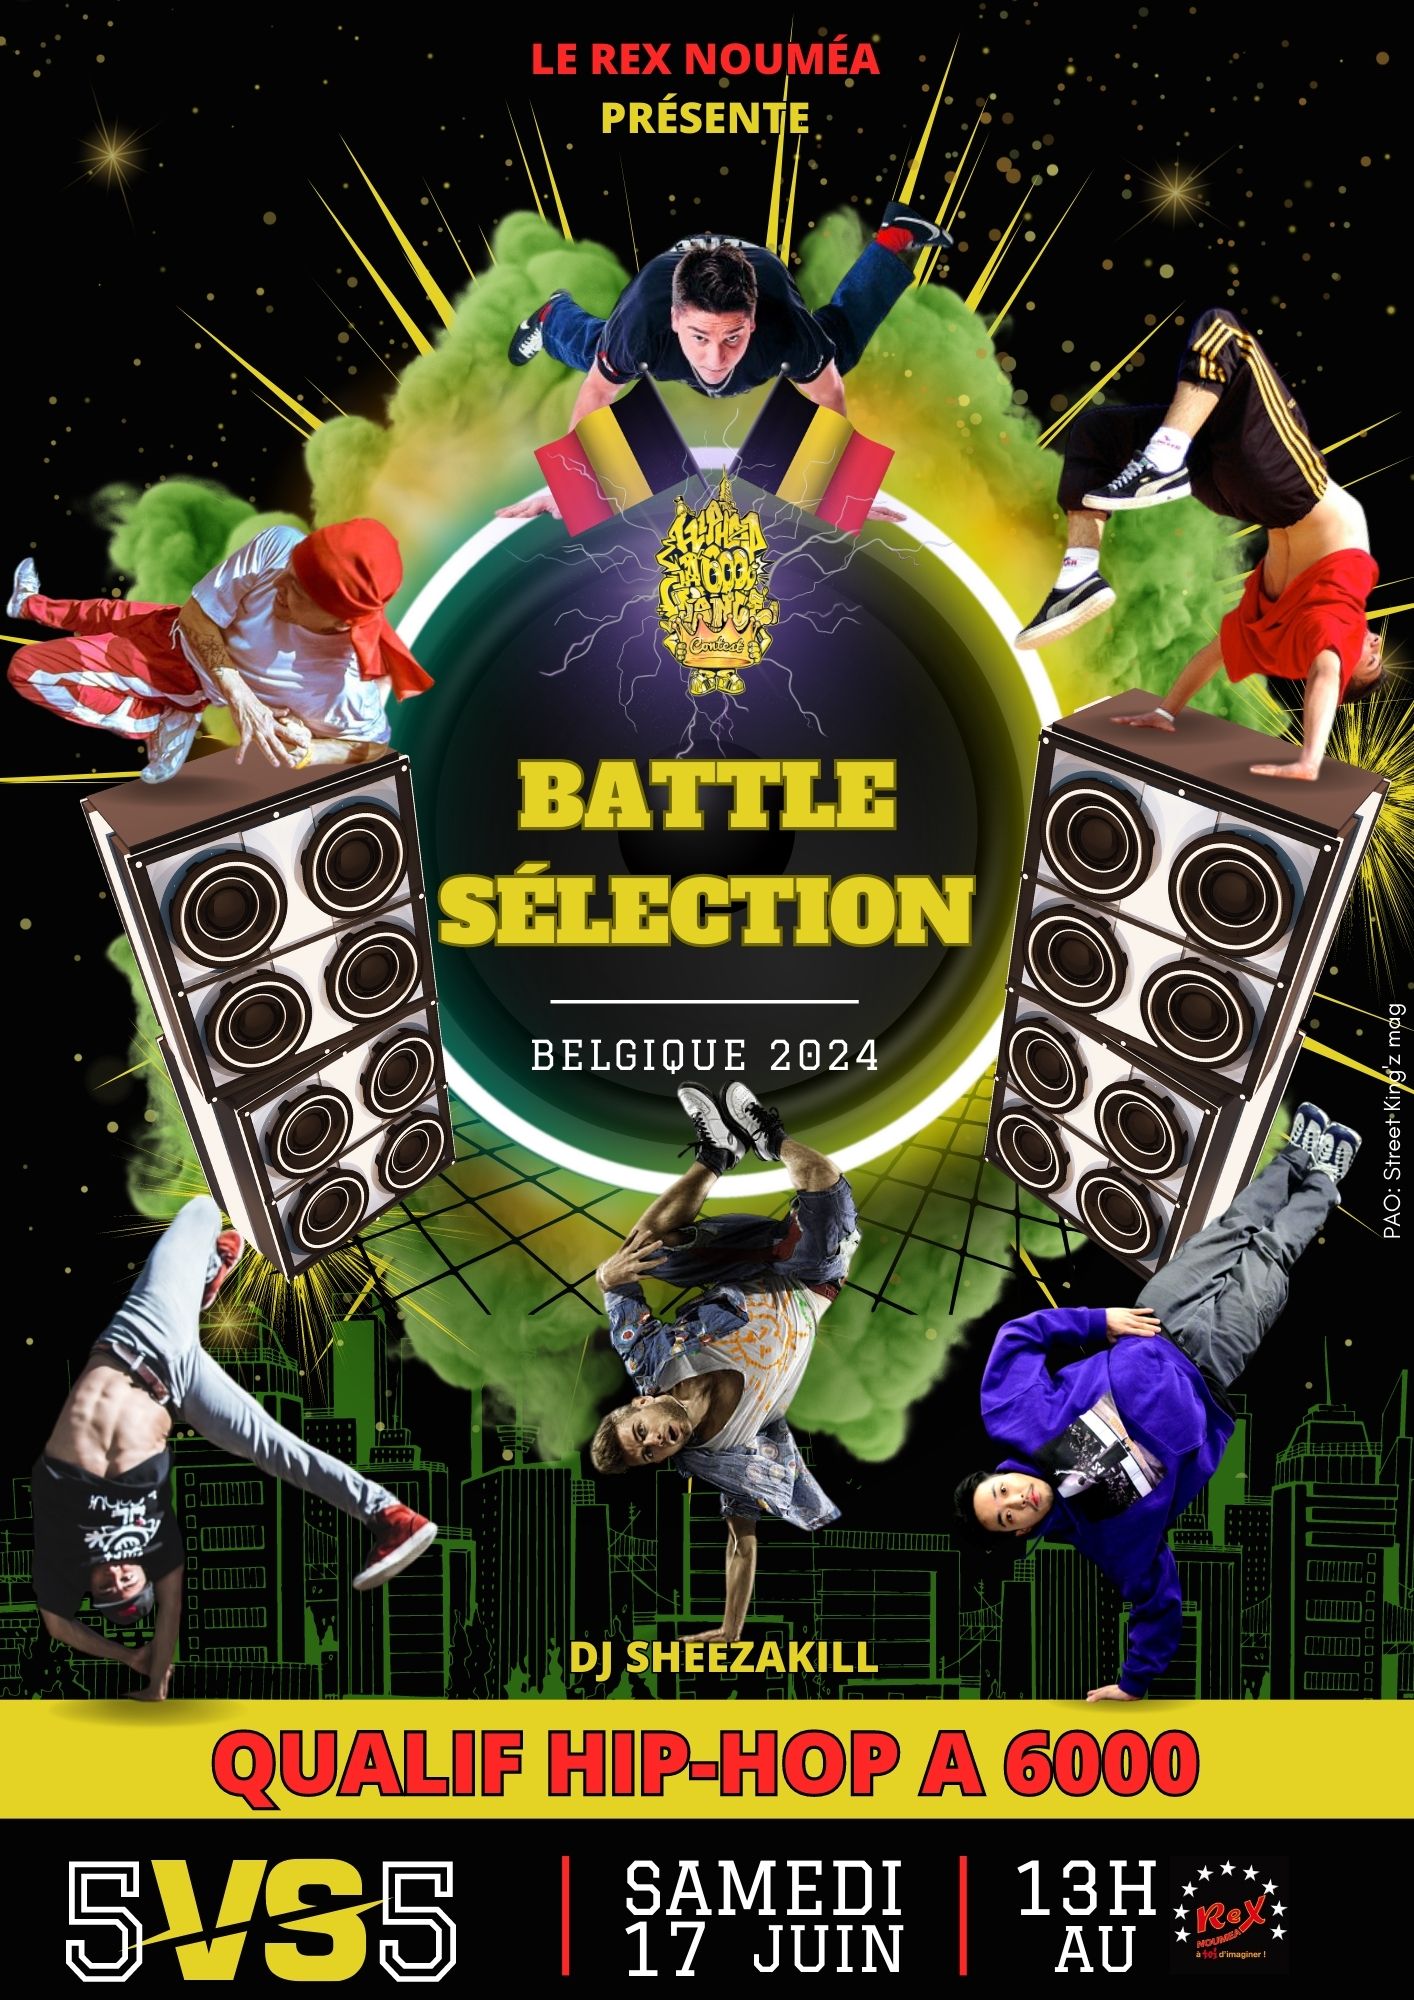 Battle sélection Belgique